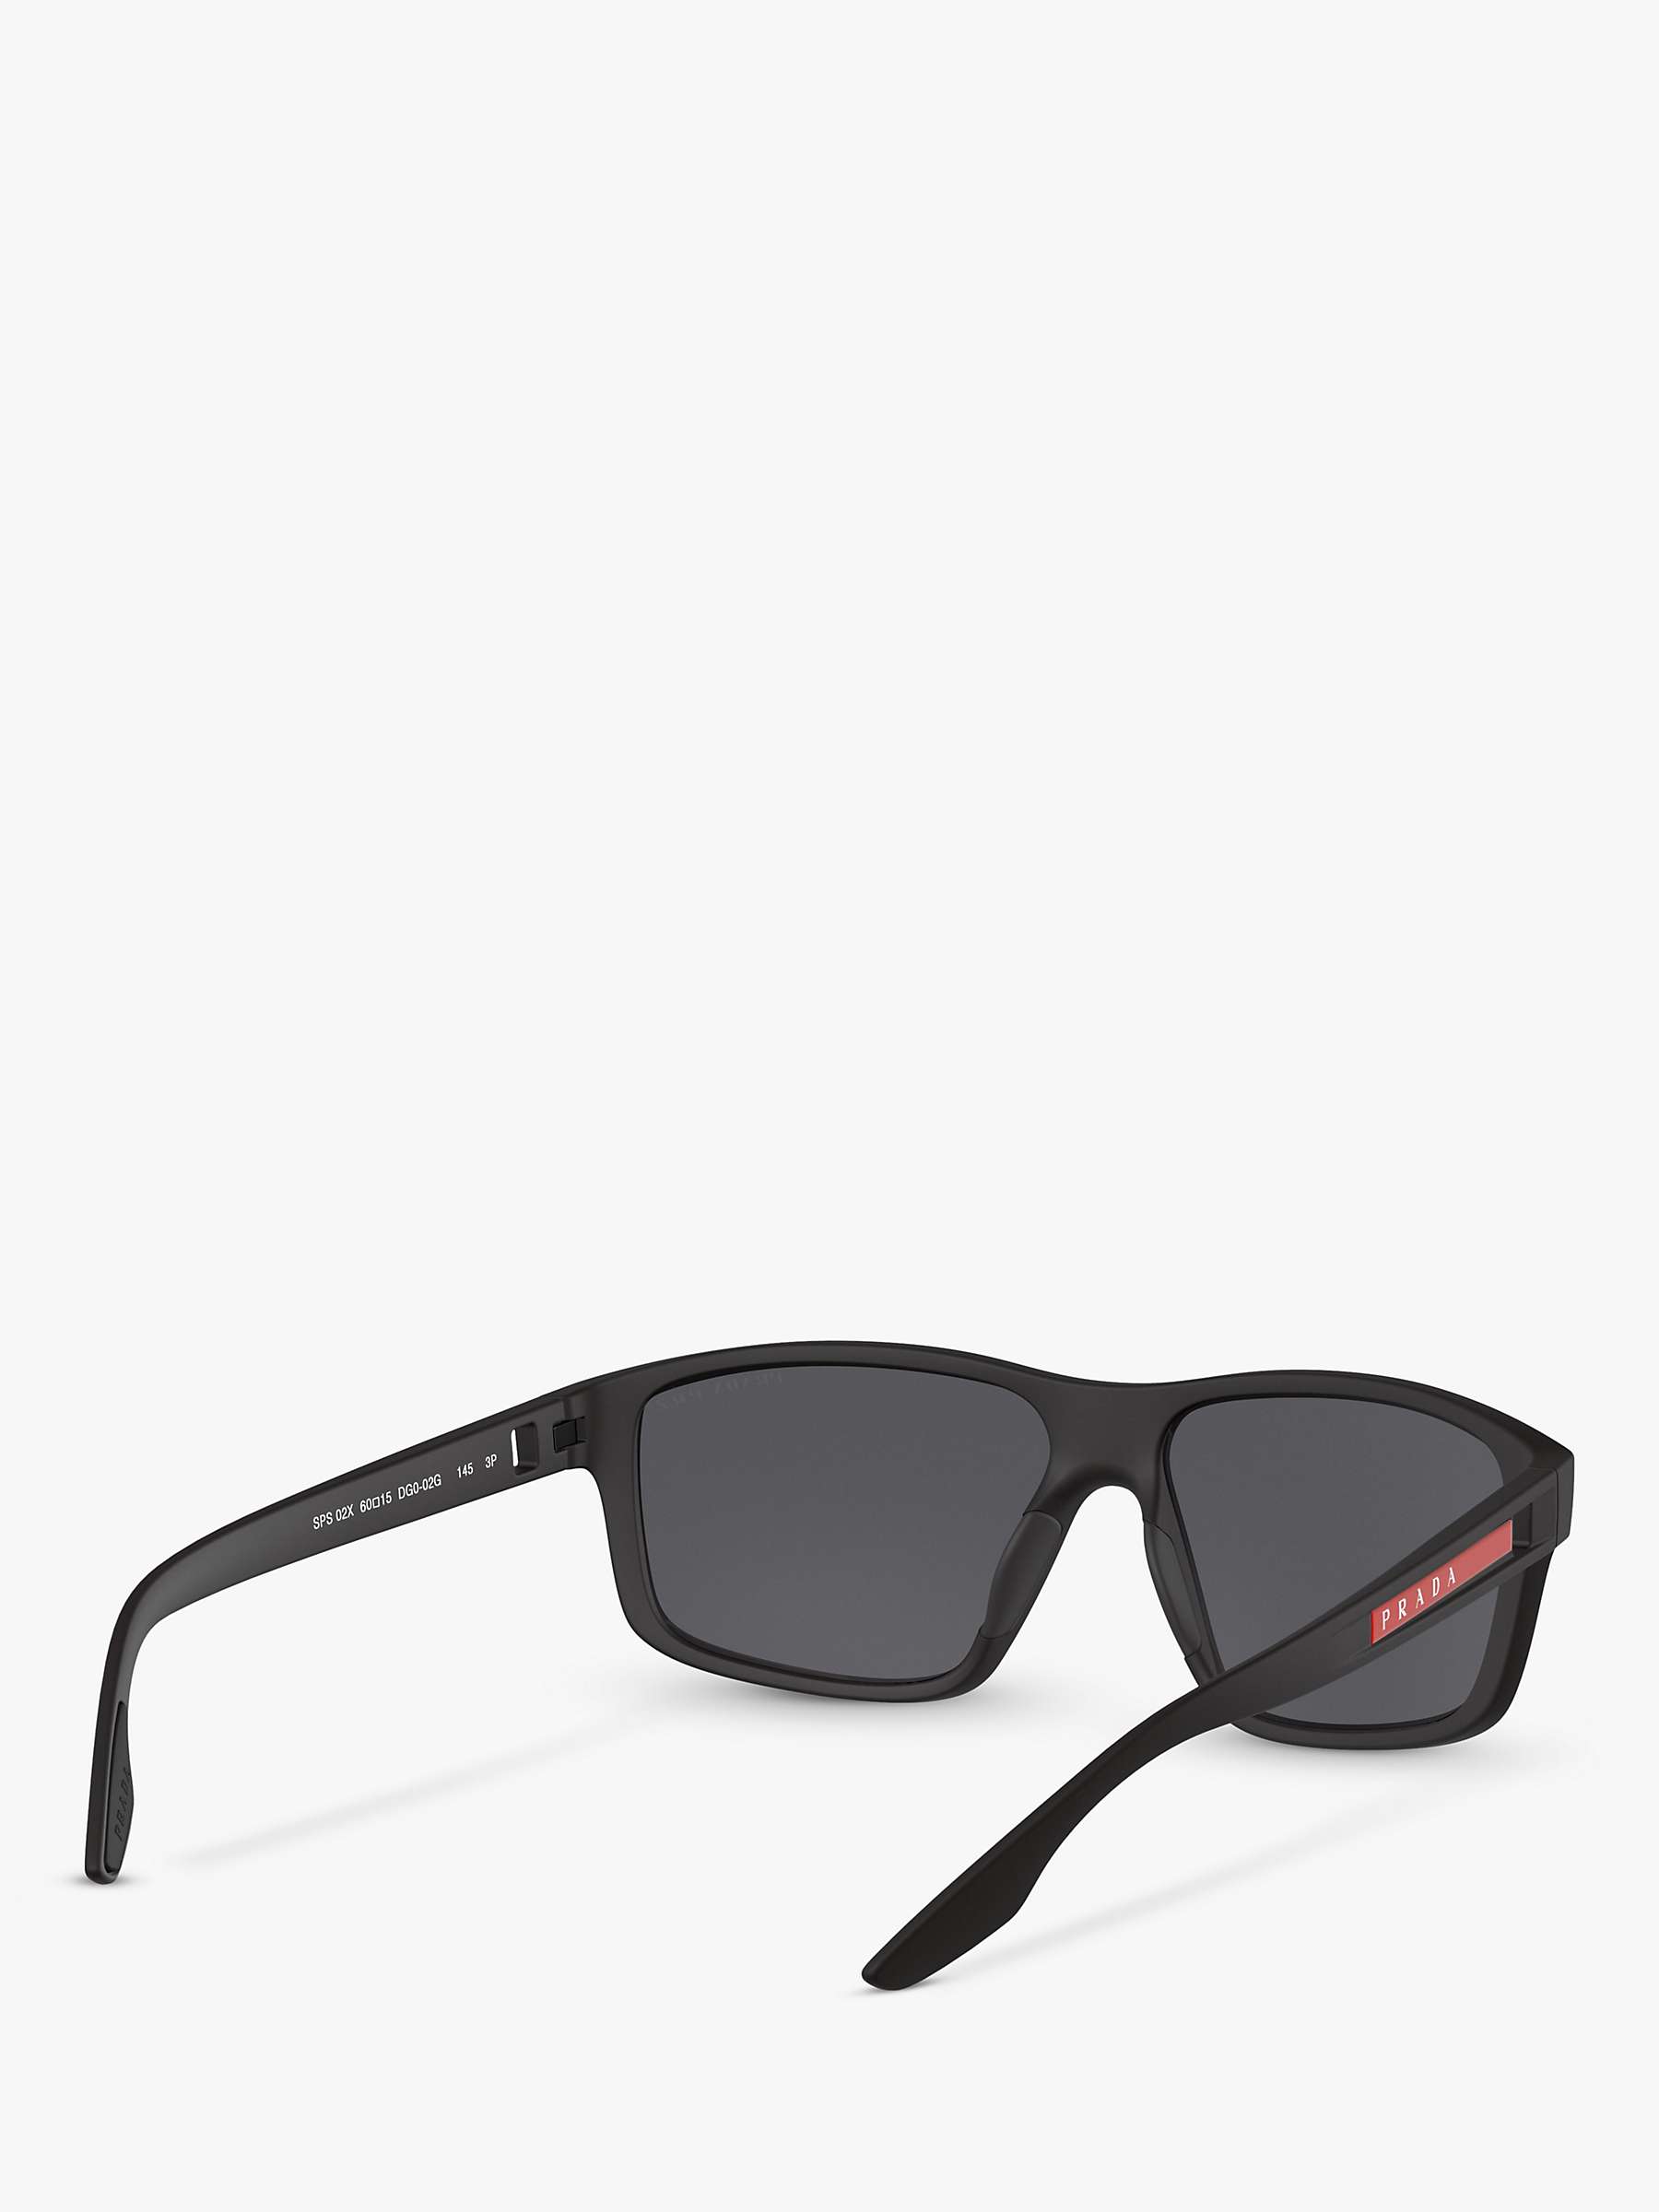 Buy Prada Linea Rossa PS 02XS Men's Polarised Rectangular Sunglasses Online at johnlewis.com